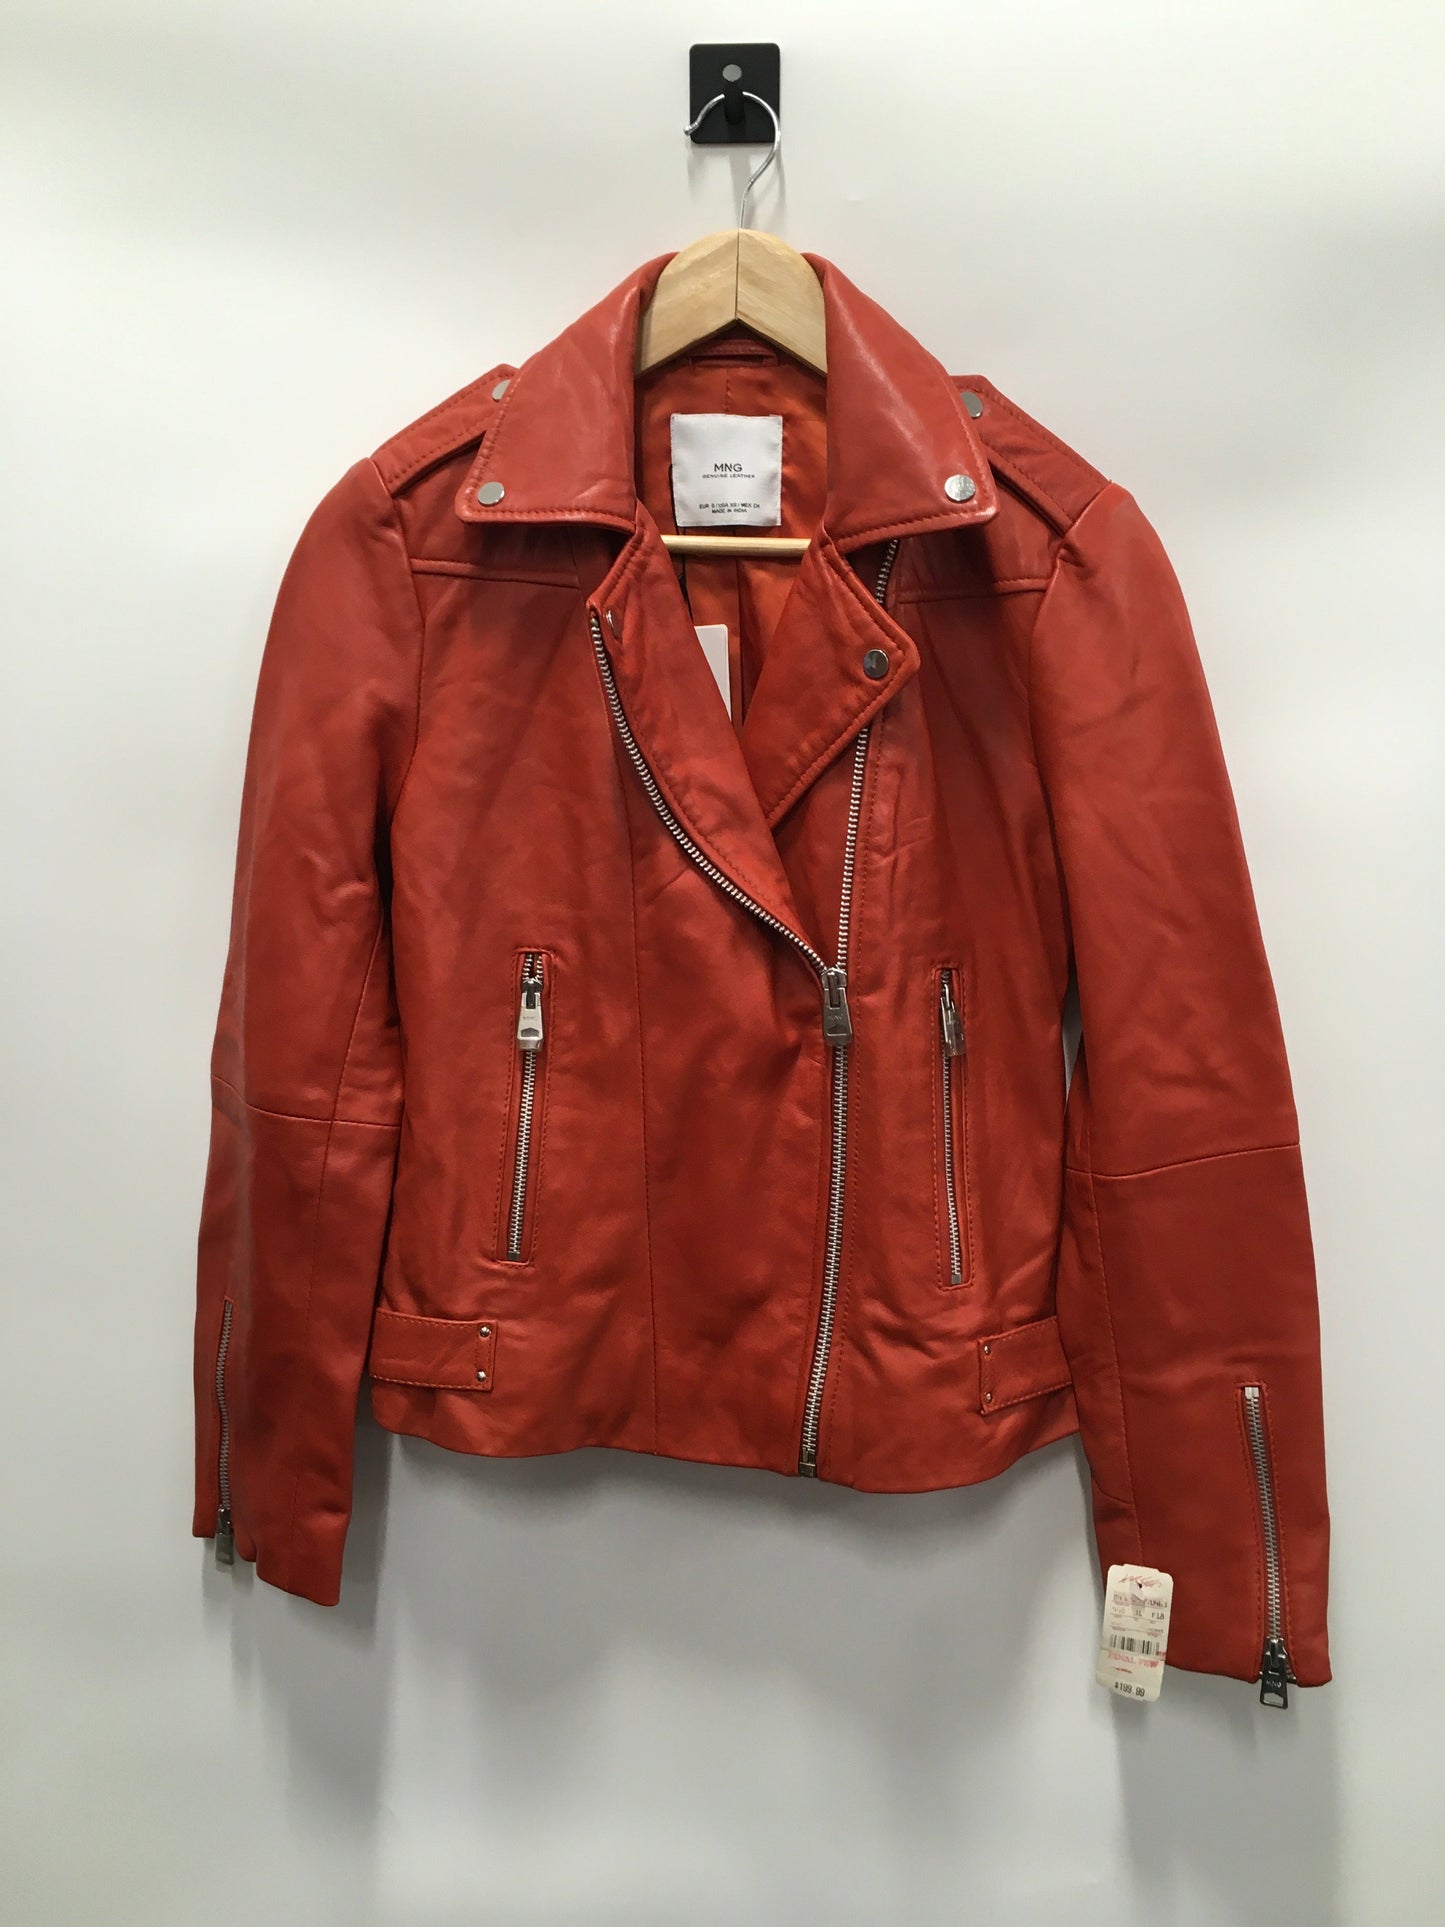 Orange Jacket Leather Mng, Size Xs